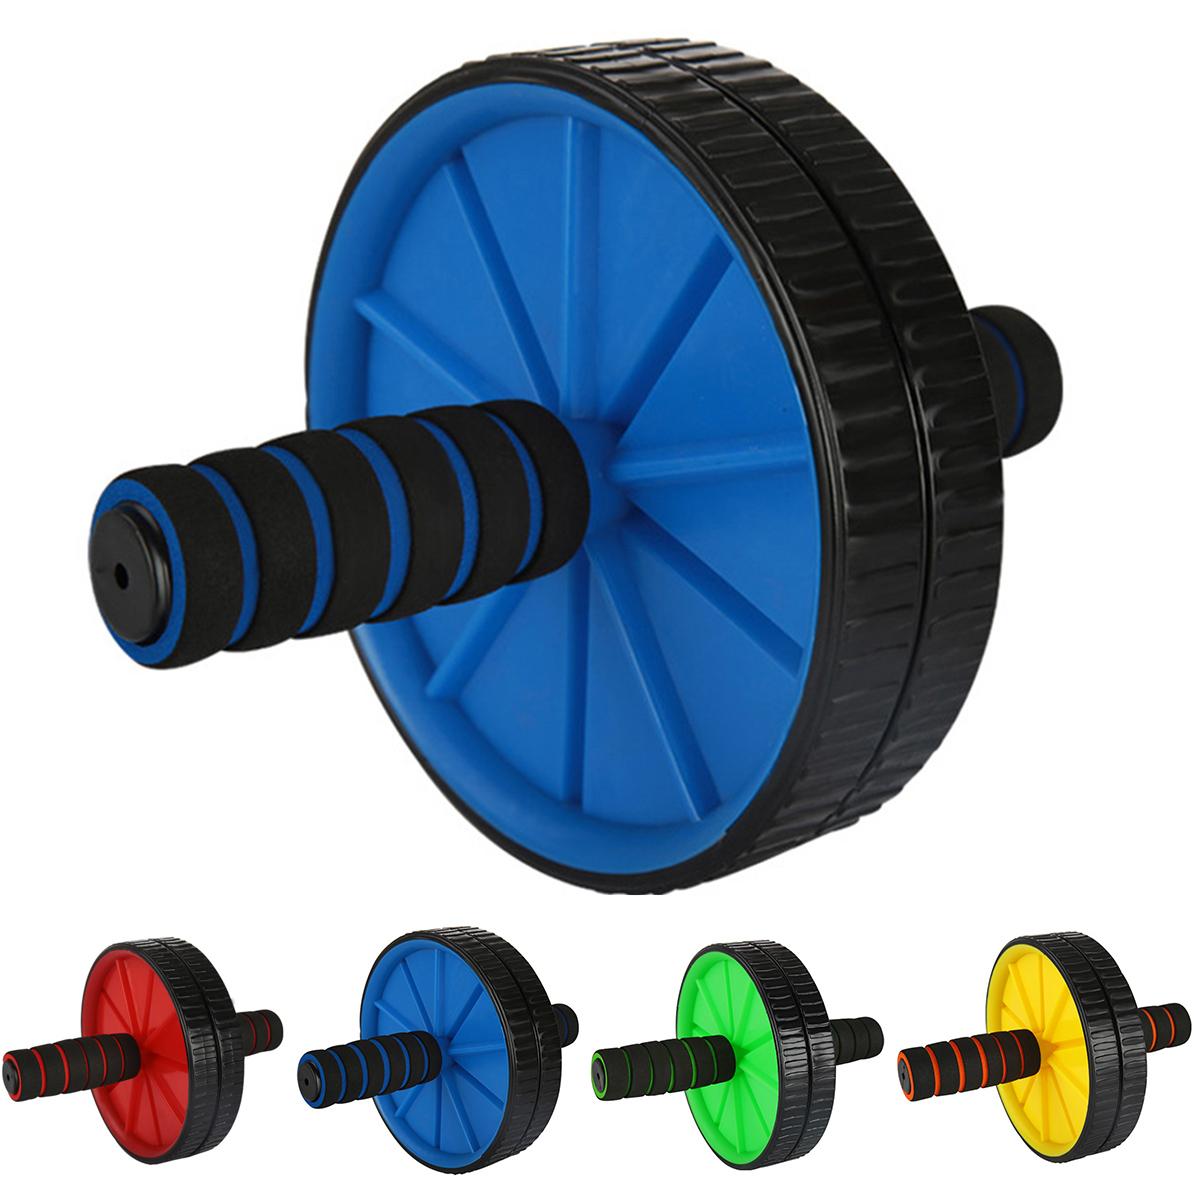 Изображение товара: Колесо абс, спортивное оборудование, компактное сборное колесо для брюшного пресса, двухколесный тренировочный тренажер для мышц живота, тренировочный тренажер